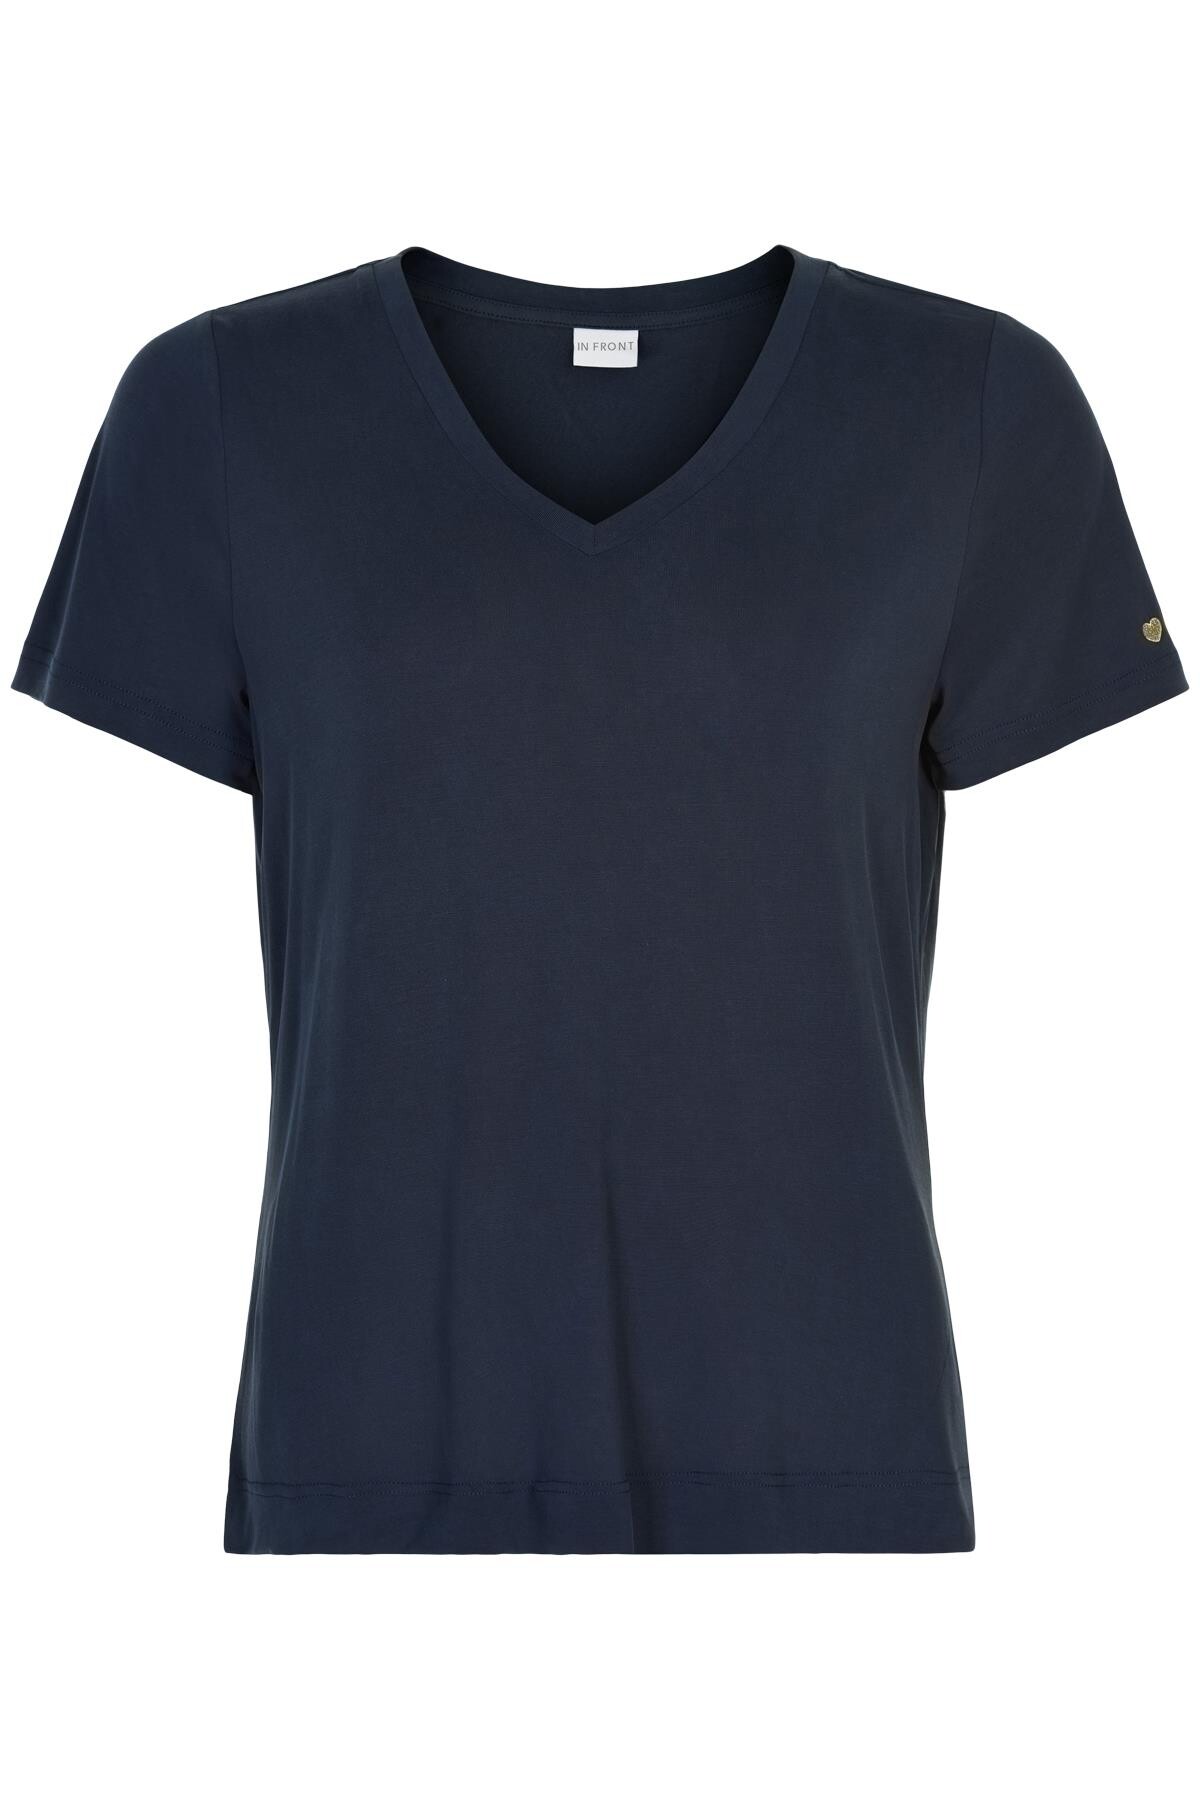 In Front Nina V-neck T-shirt, Farve: Blå, Størrelse: M, Dame